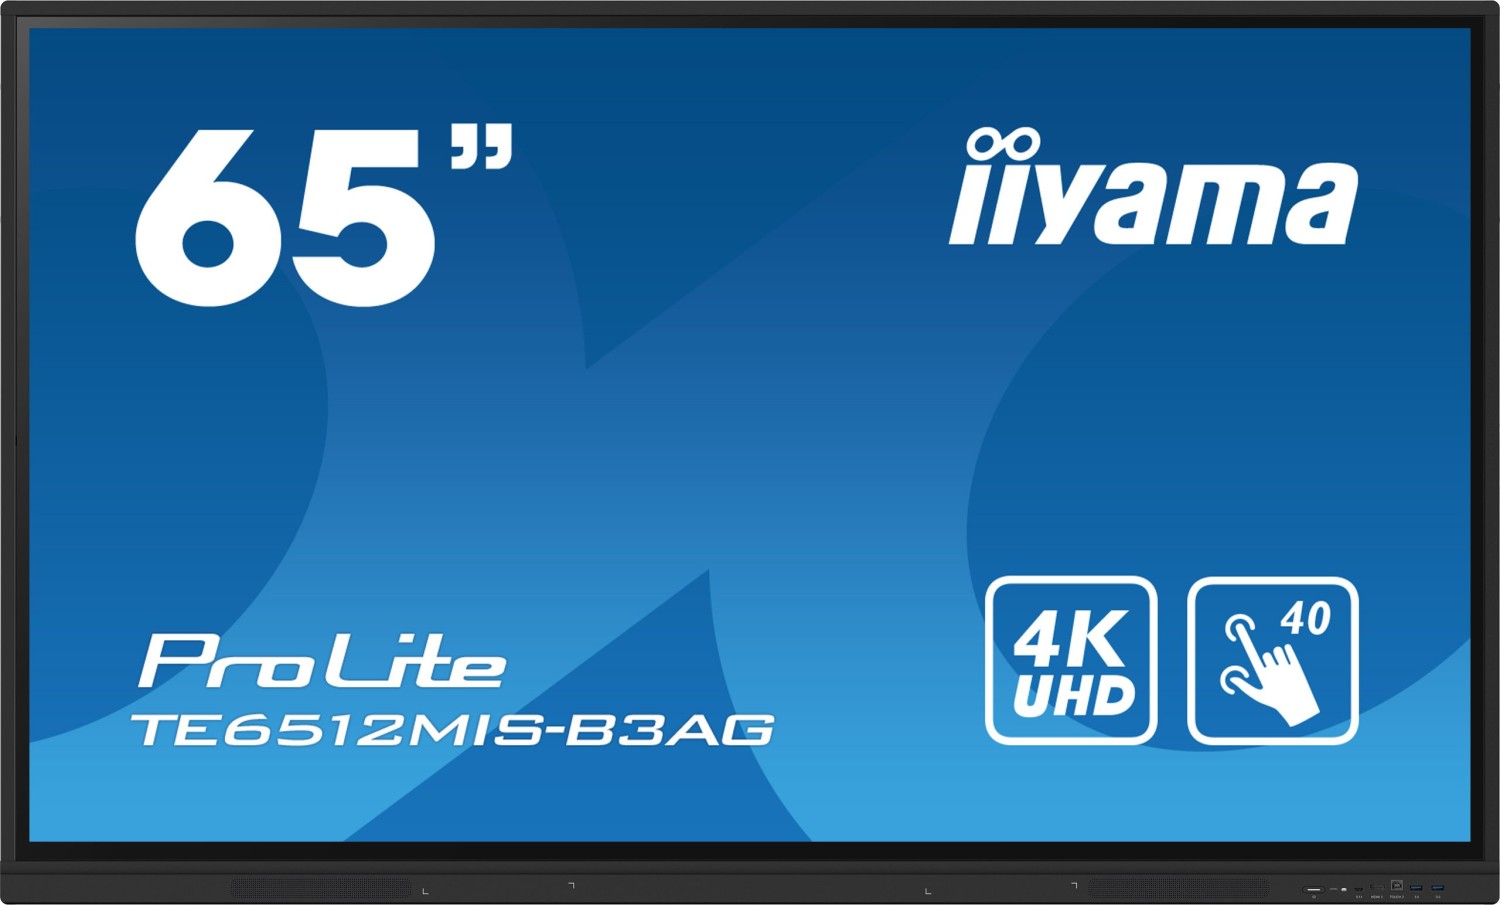 iiyama 65" iiWare10 , Android 11, 40-Points PureTouch IR with zero bonding, 3840x2160, UHD IPS panel, Metal Housing, Fan